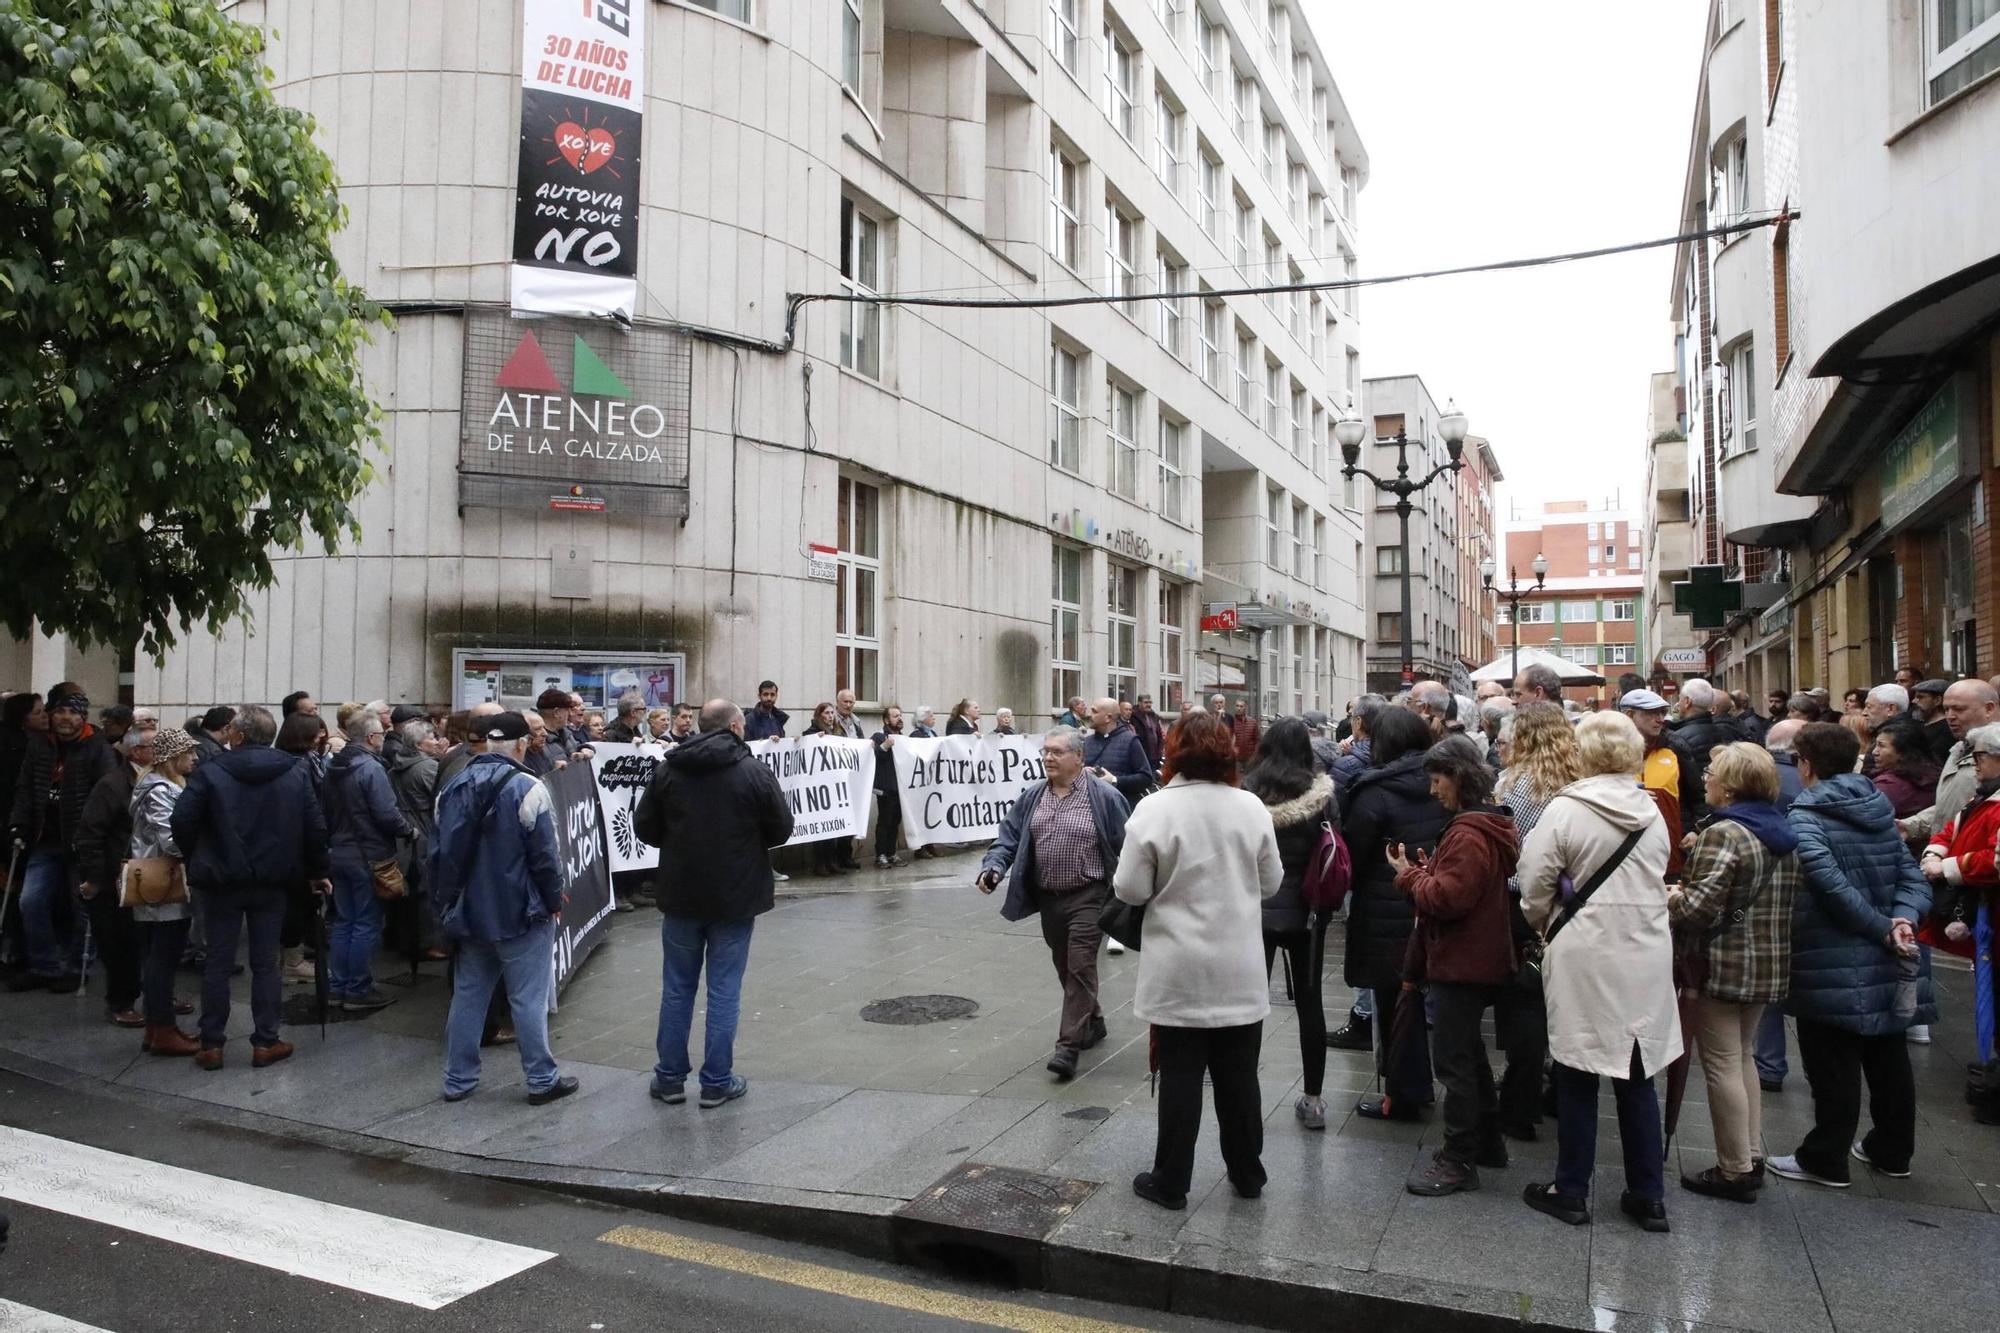 Así fue la nueva movilización vecinal en Gijón por el vial de Jove (en imágenes)